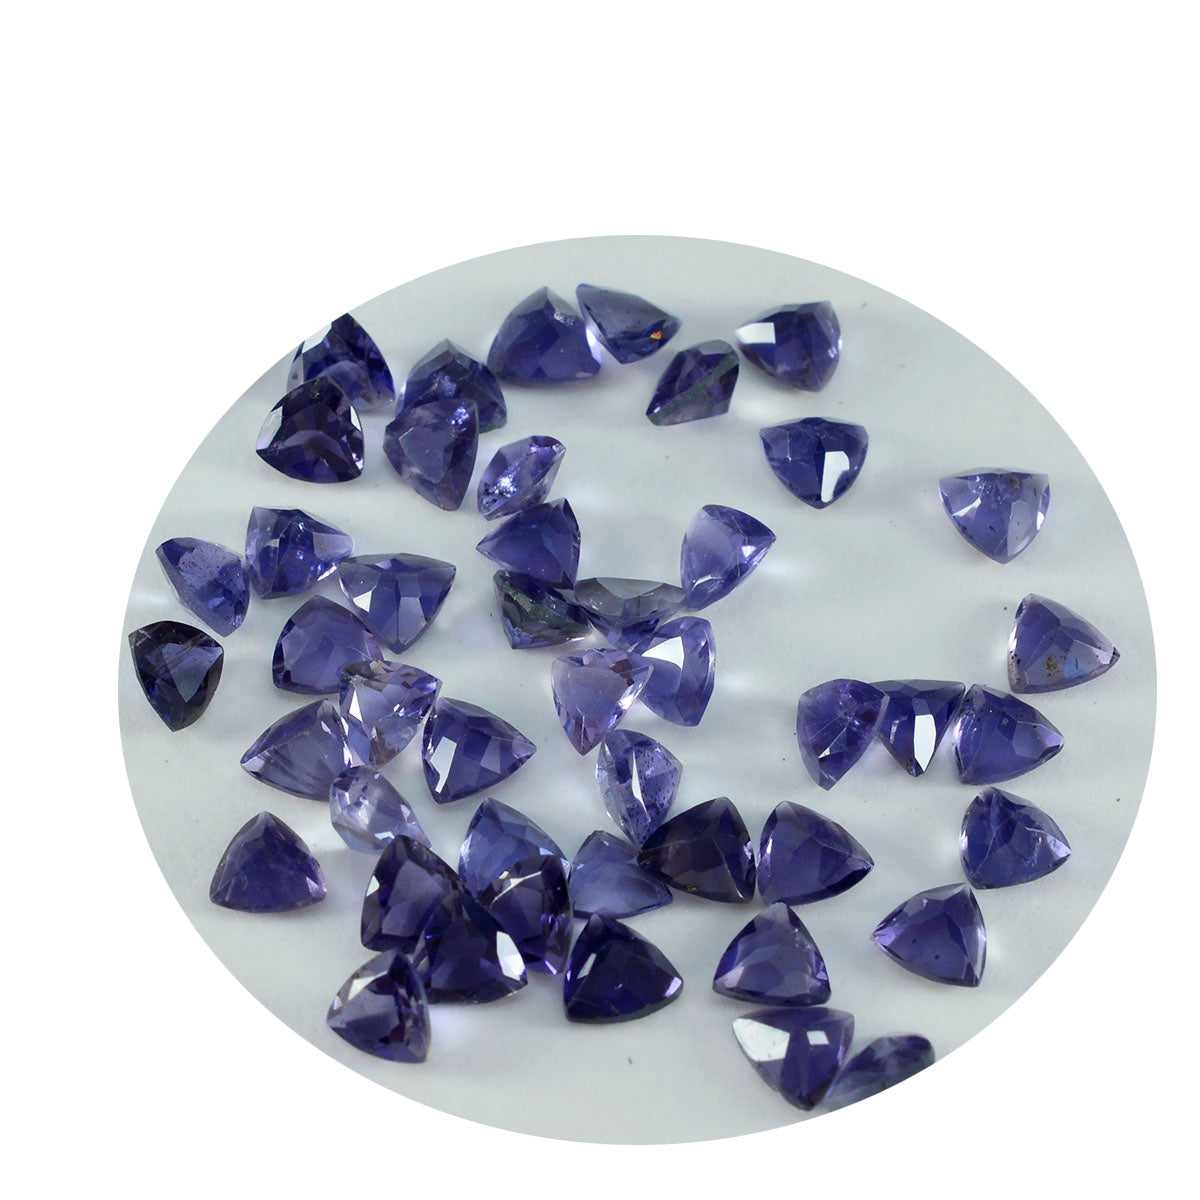 Riyogems 1 Stück blauer Iolith, facettiert, 5 x 5 mm, Billionenform, schön aussehende, hochwertige lose Edelsteine